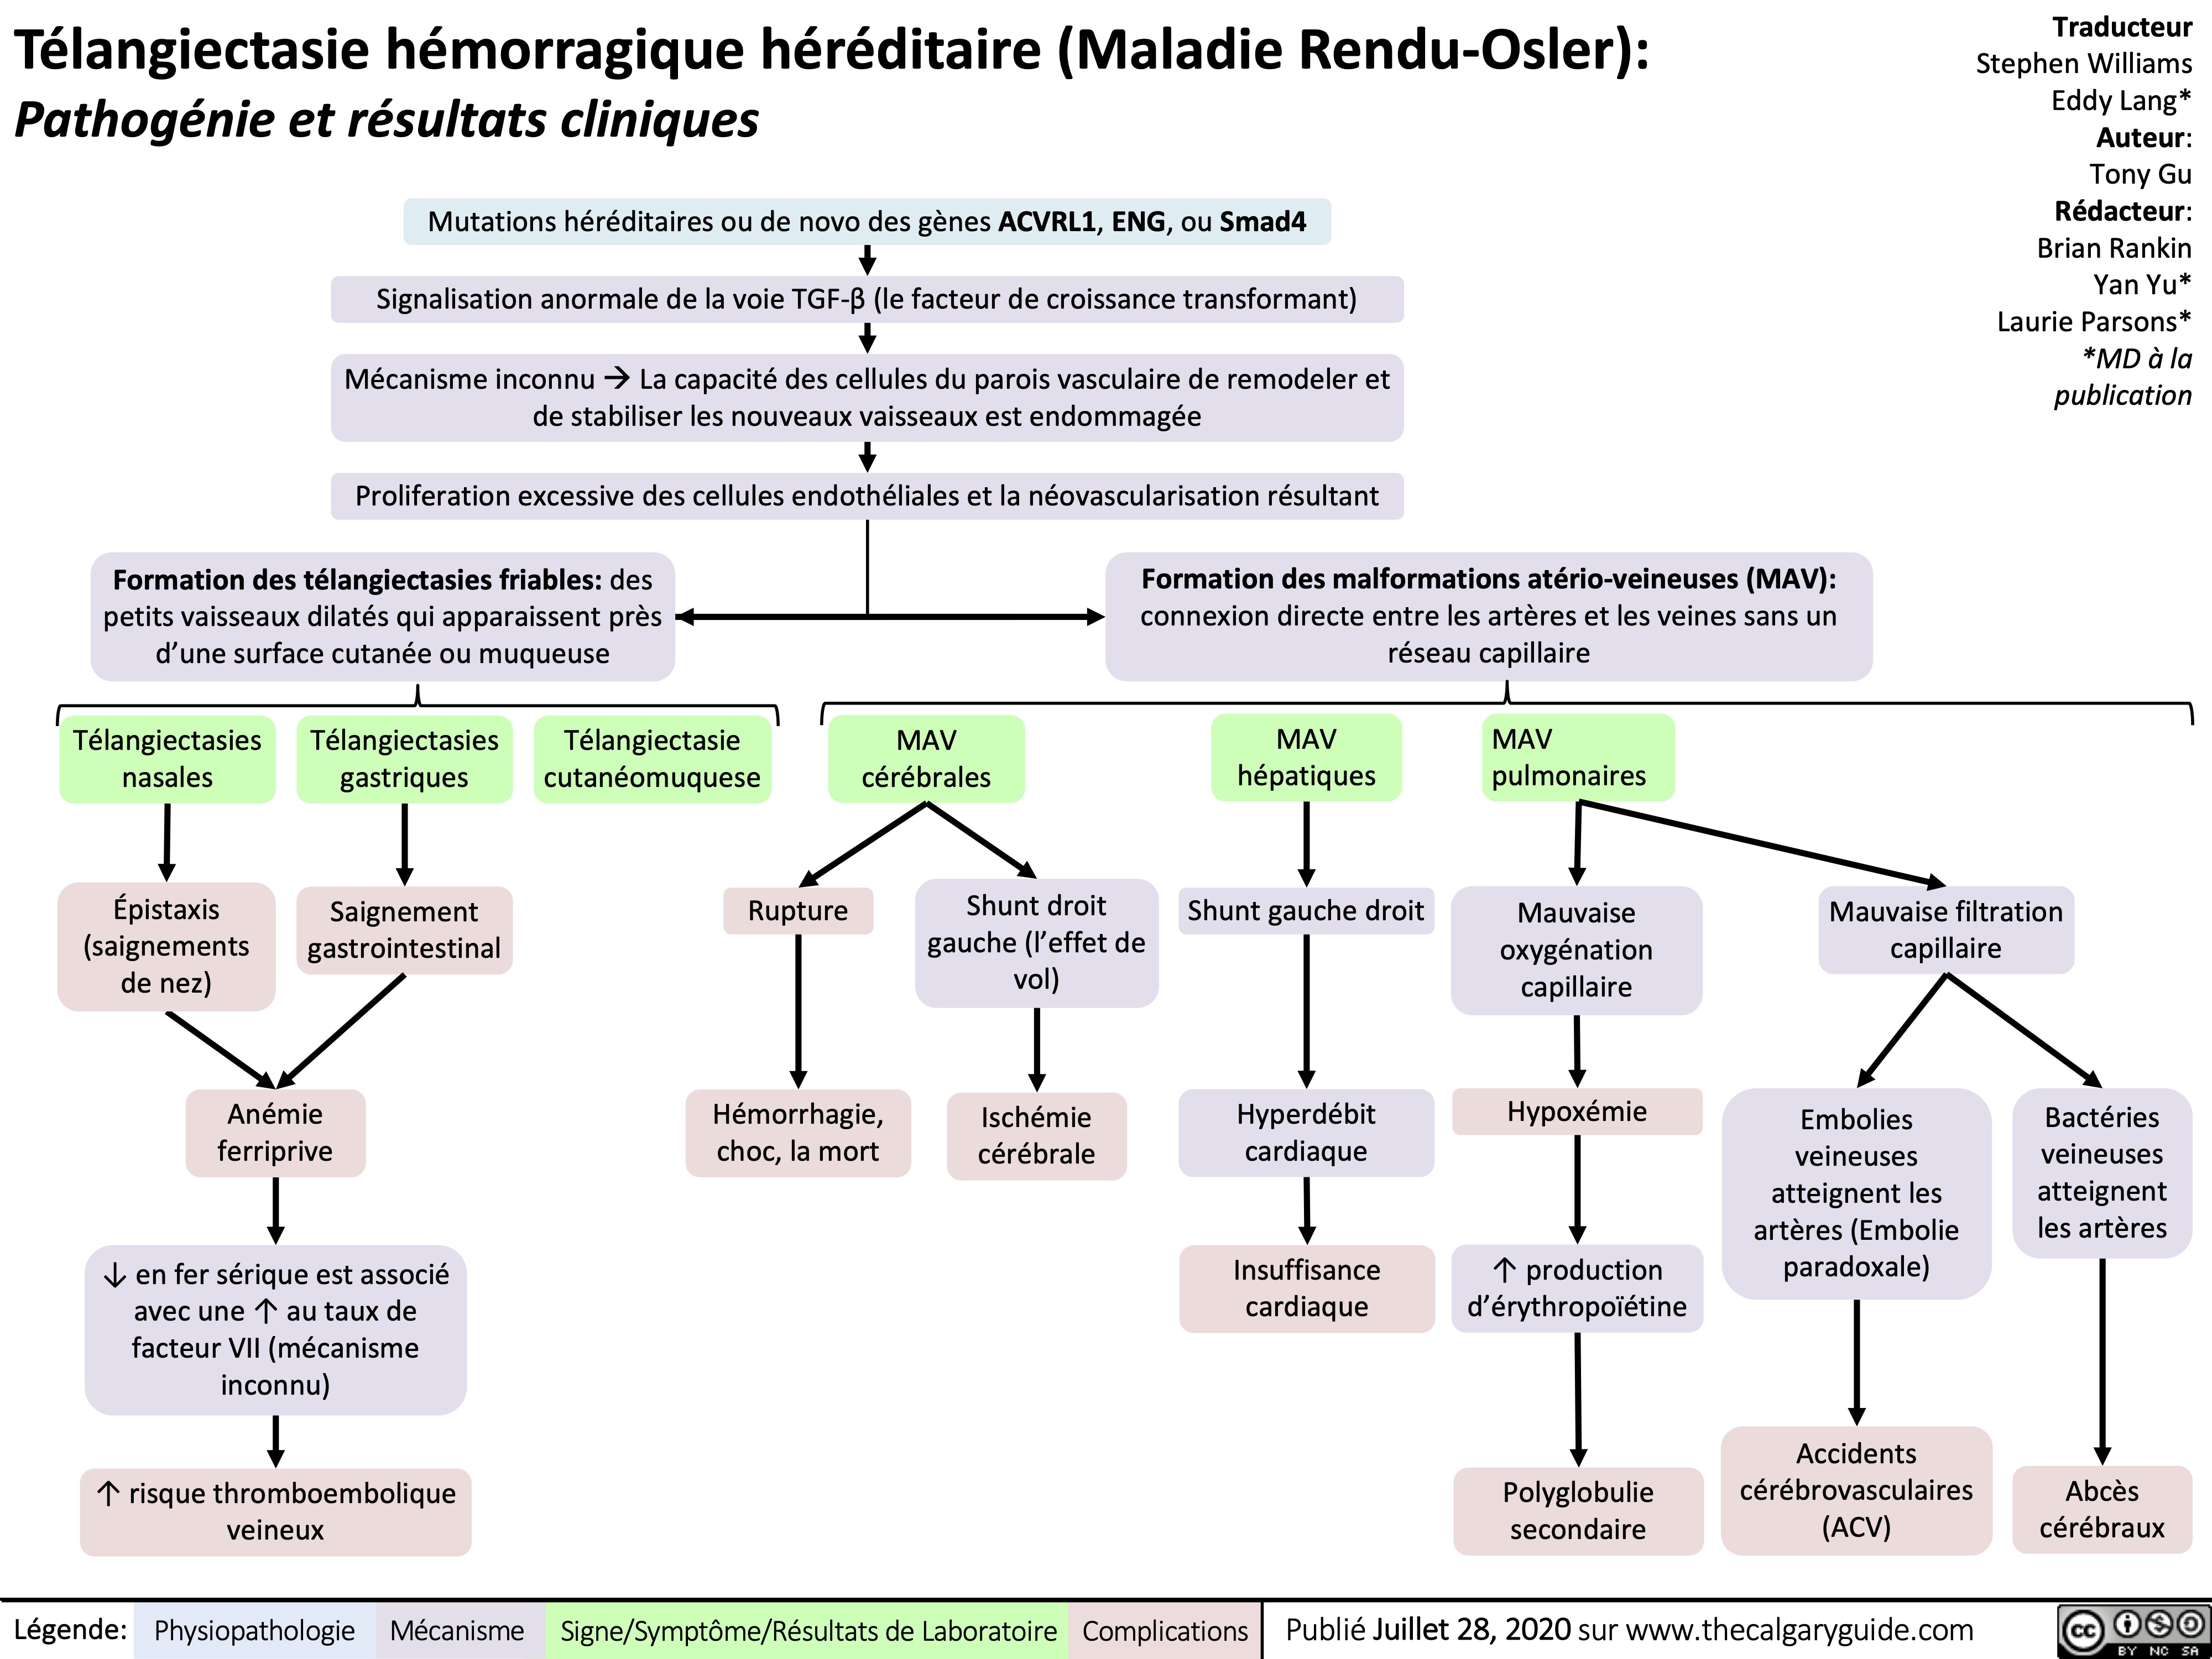 Télangiectasie hémorragique héréditaire (Maladie Rendu-Osler):
Pathogénie et résultats cliniques